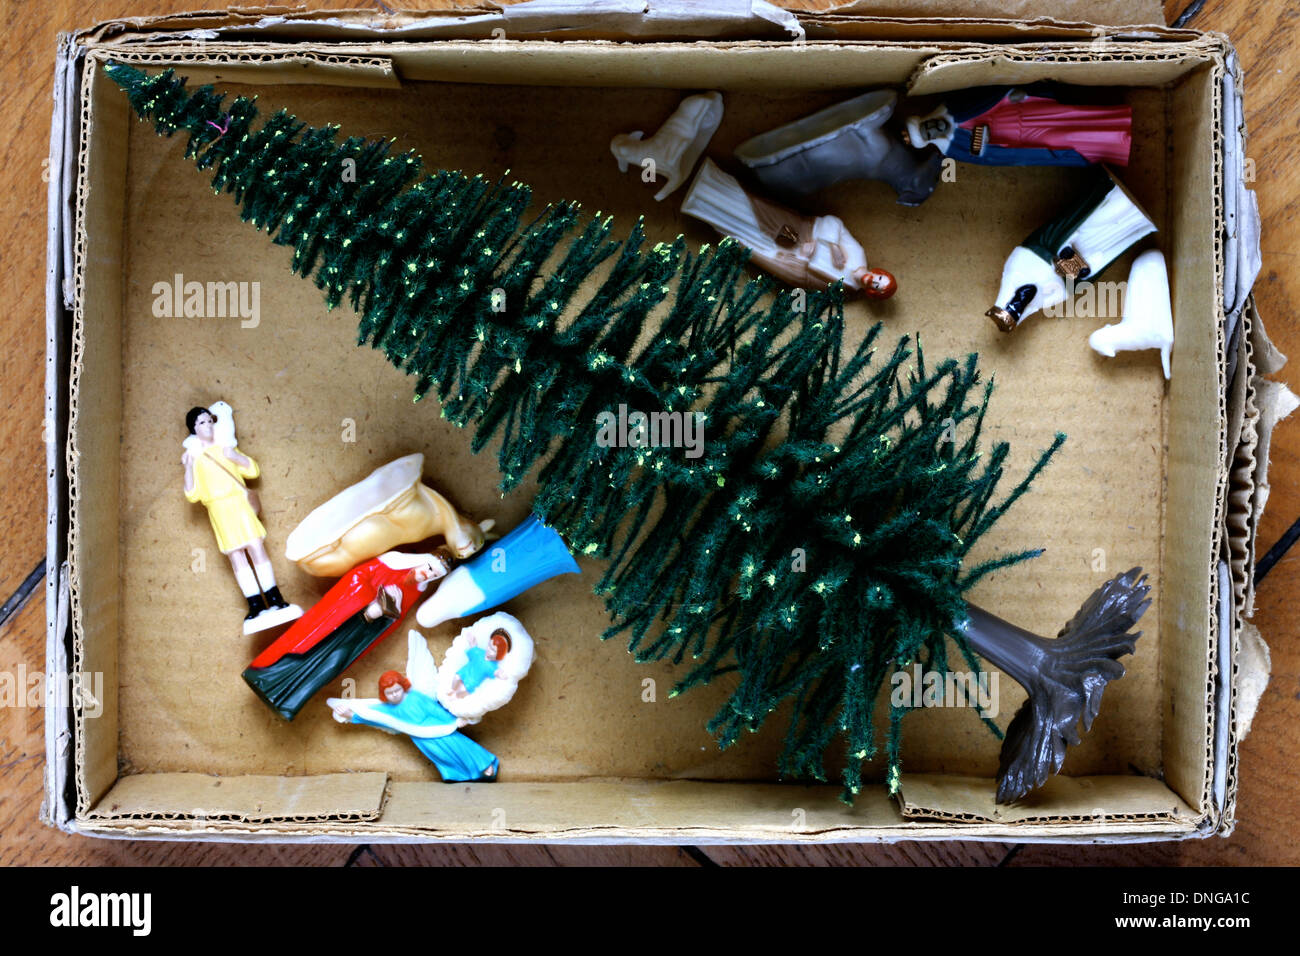 Weihnachten, Weihnachtsfiguren, Krippe, Krippenfiguren, Tanne, Schachtel, Verpackung, abraeumen Stock Photo